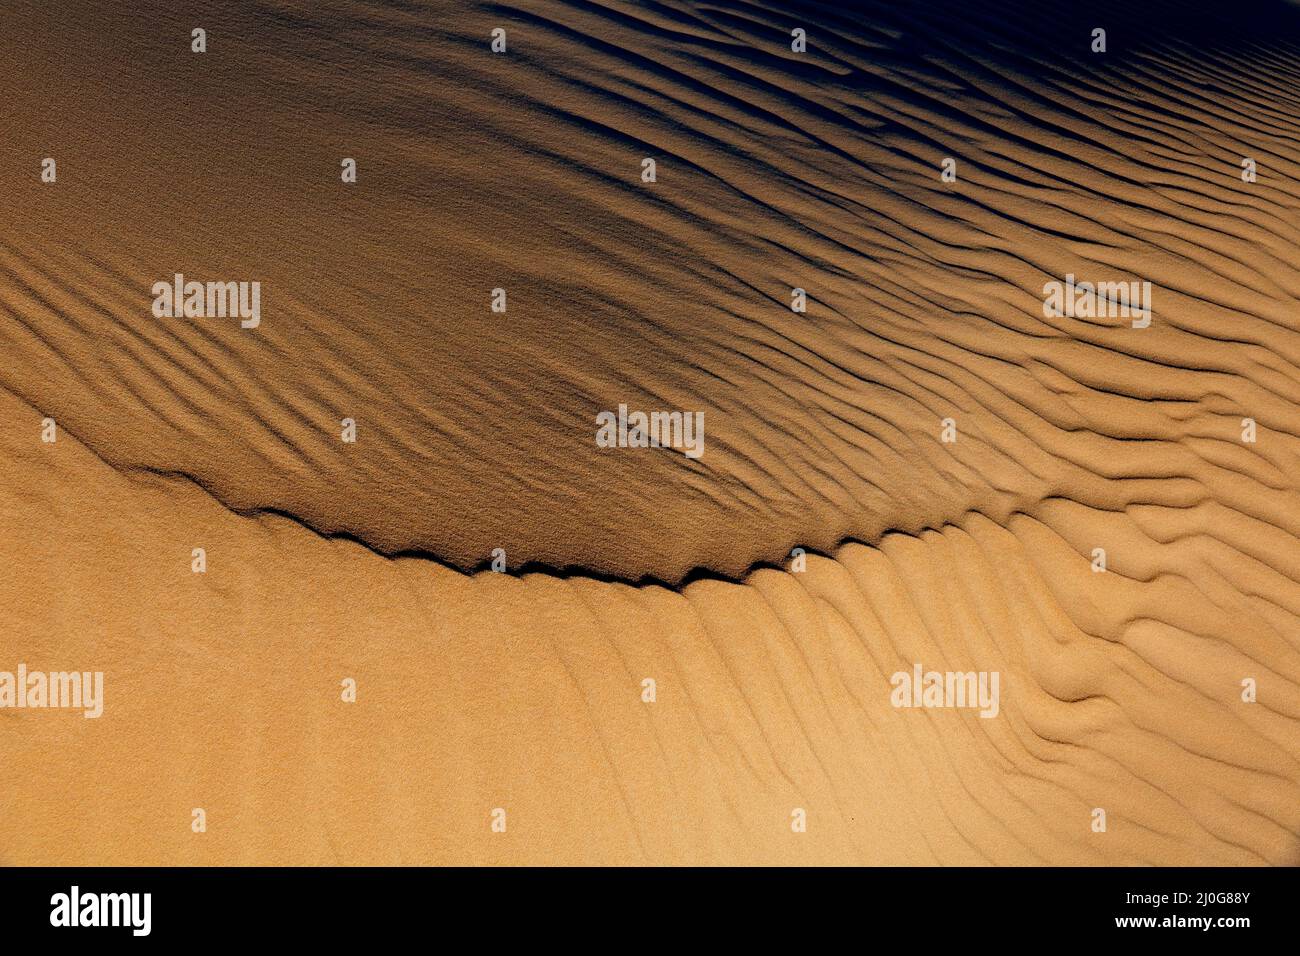 Motifs et textures sur une dune de sable du désert créée par le vent, Afrique du Sud Banque D'Images